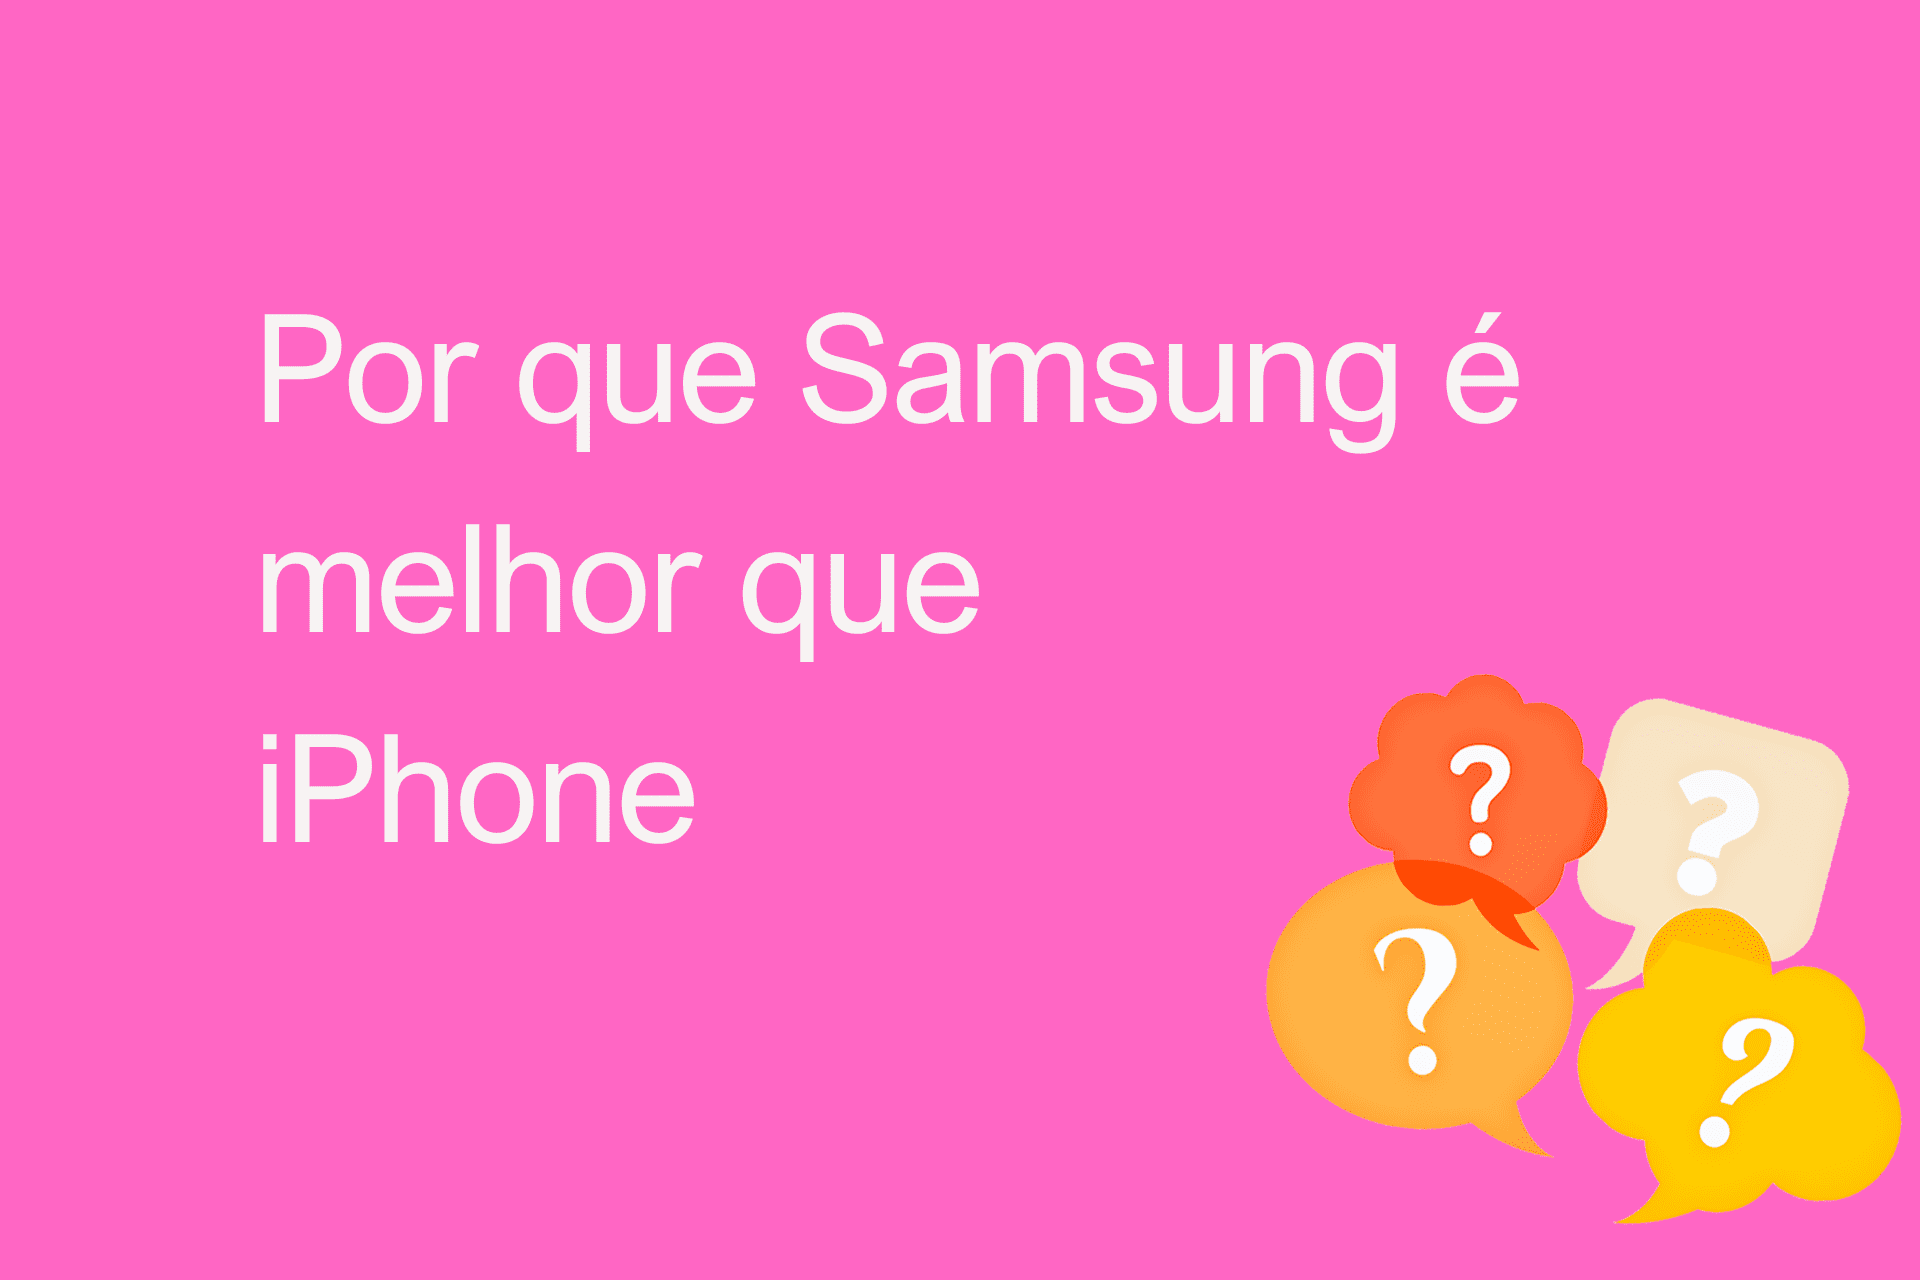 Por que Samsung é melhor que iPhone?